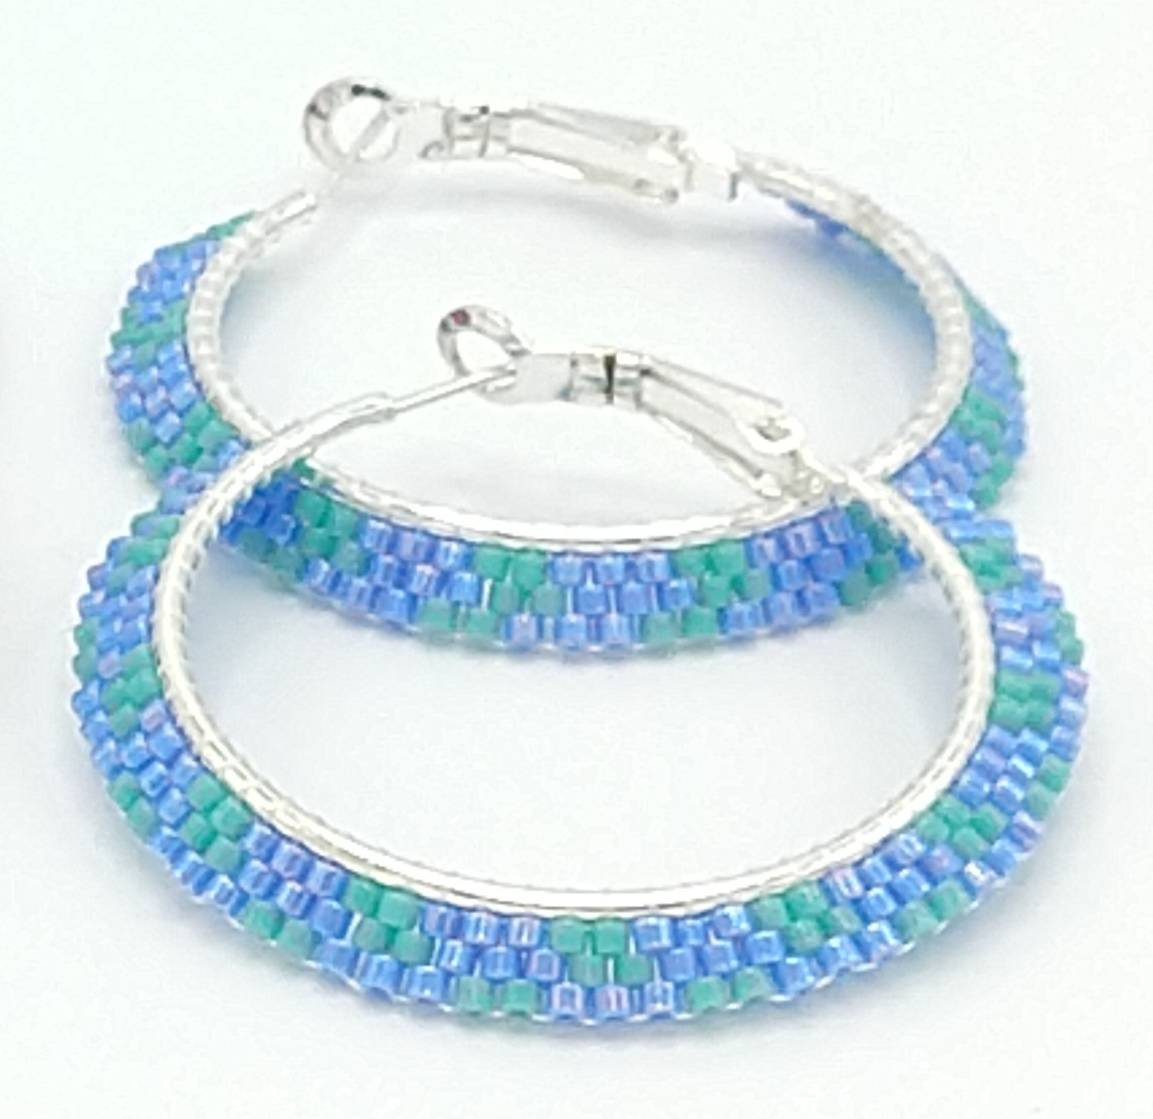 Beaded Hoops Beaded Earrings Hoop Earrings Blue And Turquoise Earrings Seed Bead Earrings Seed Bead Jewelry Beaded Jewelry Boho Hoops